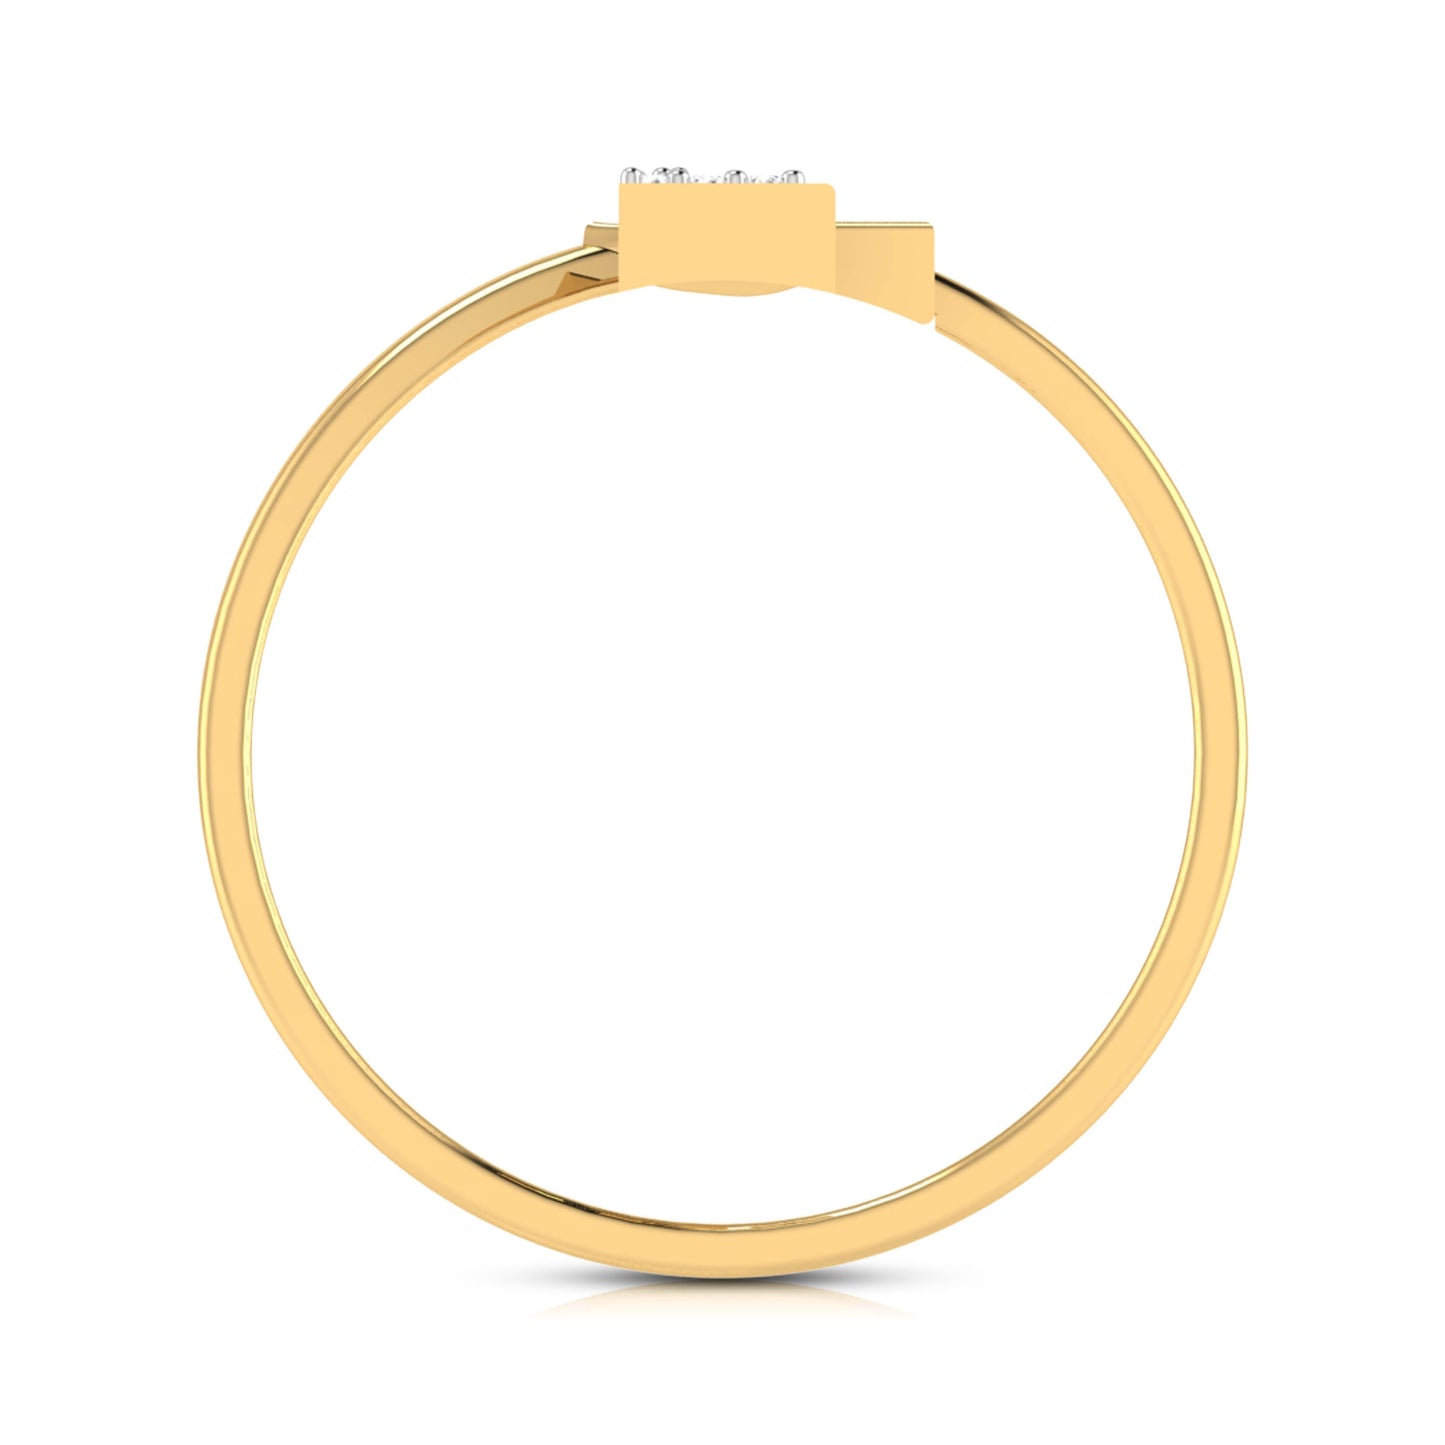 Carcasse lab grown diamond ring simple round ring design Fiona Diamonds